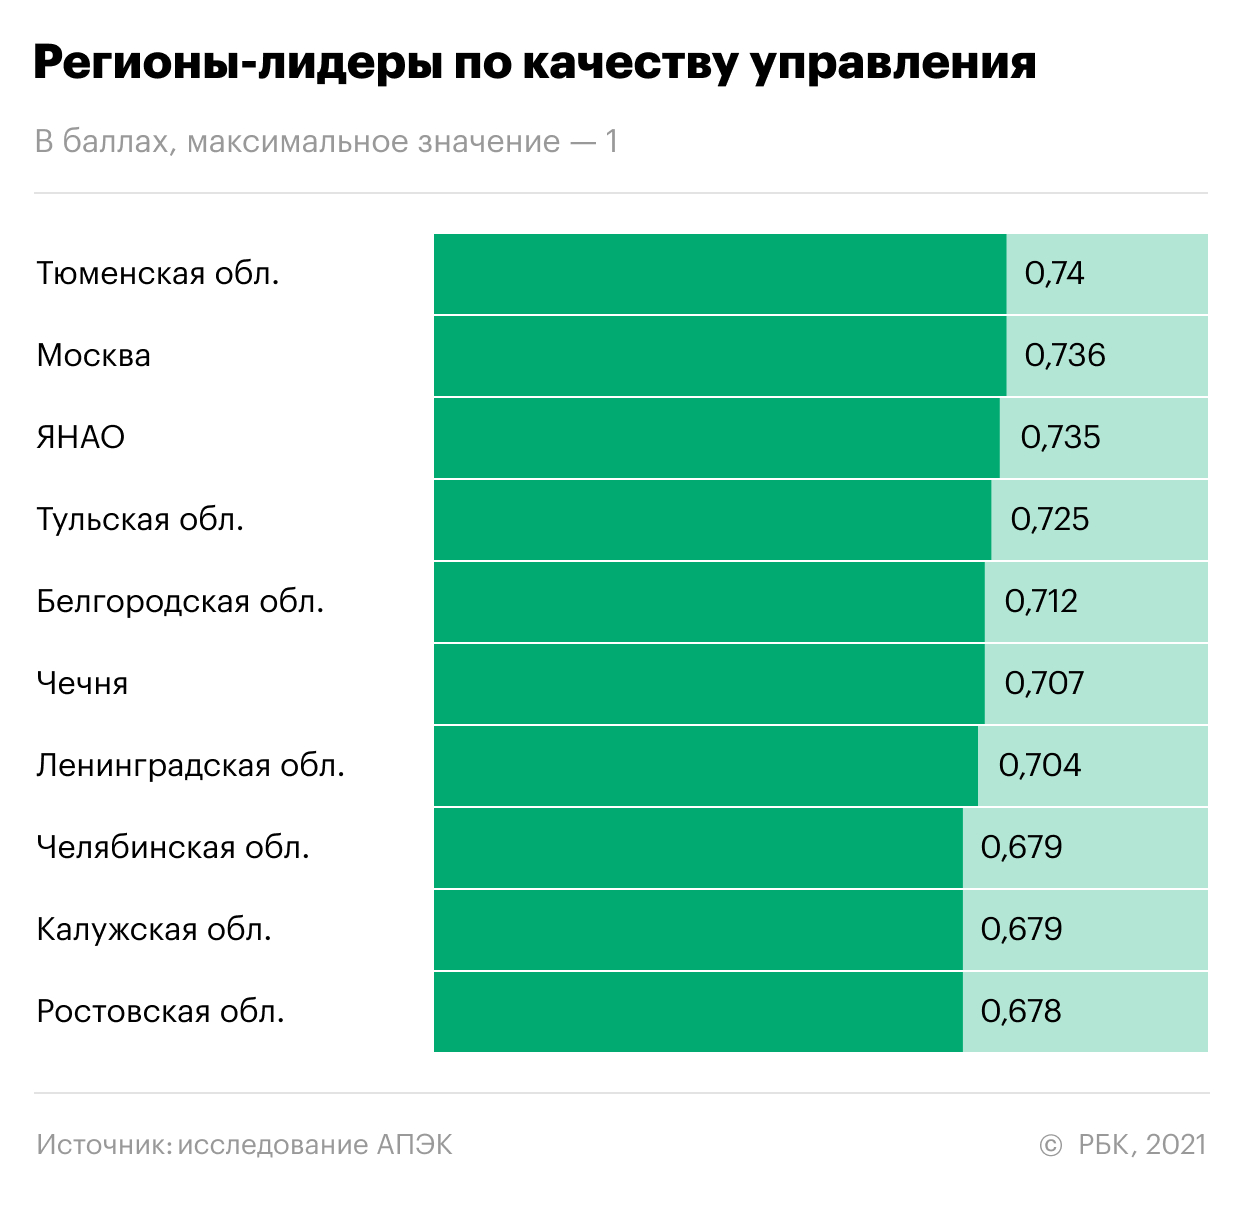 Политологи назвали лучшие и худшие регионы России по качеству управления"/>













